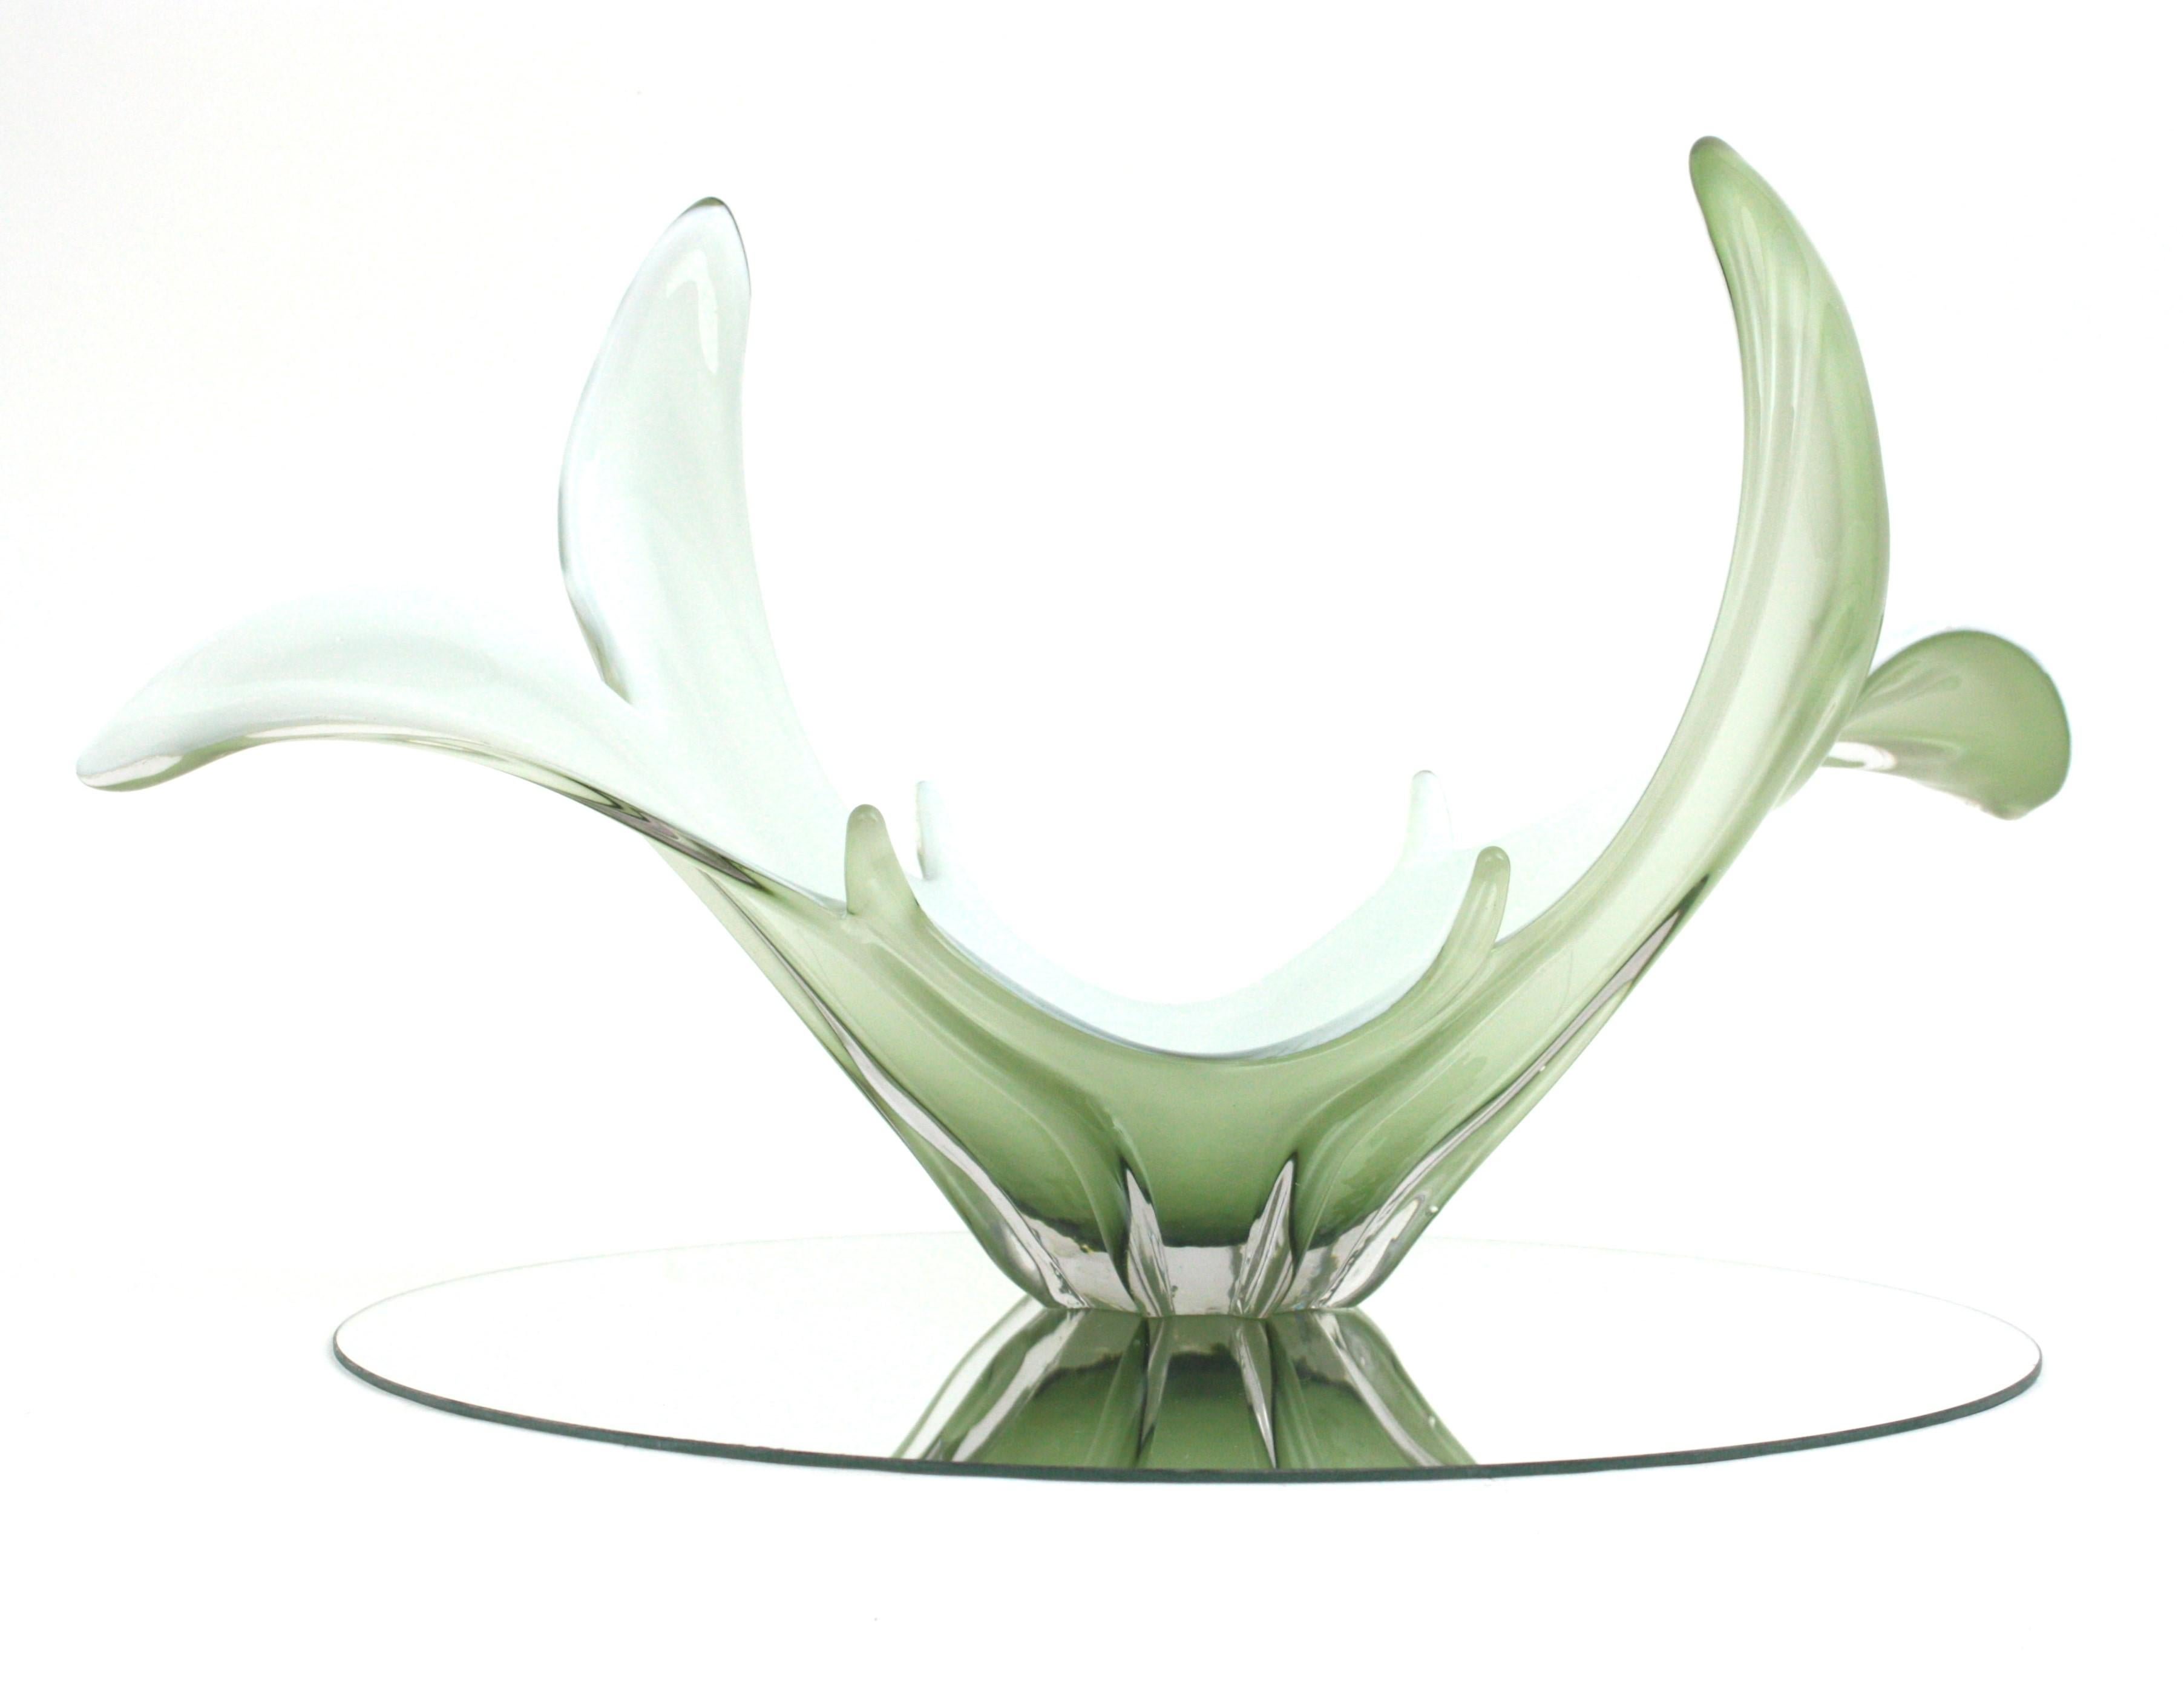 Centre de table / vase en verre de Murano soufflé à la main, vert pâle et blanc, très décoratif, avec un design organique. Italie, années 1960
Verre vert pâle encastré dans du verre transparent. La partie intérieure est en verre opalin blanc.
Il